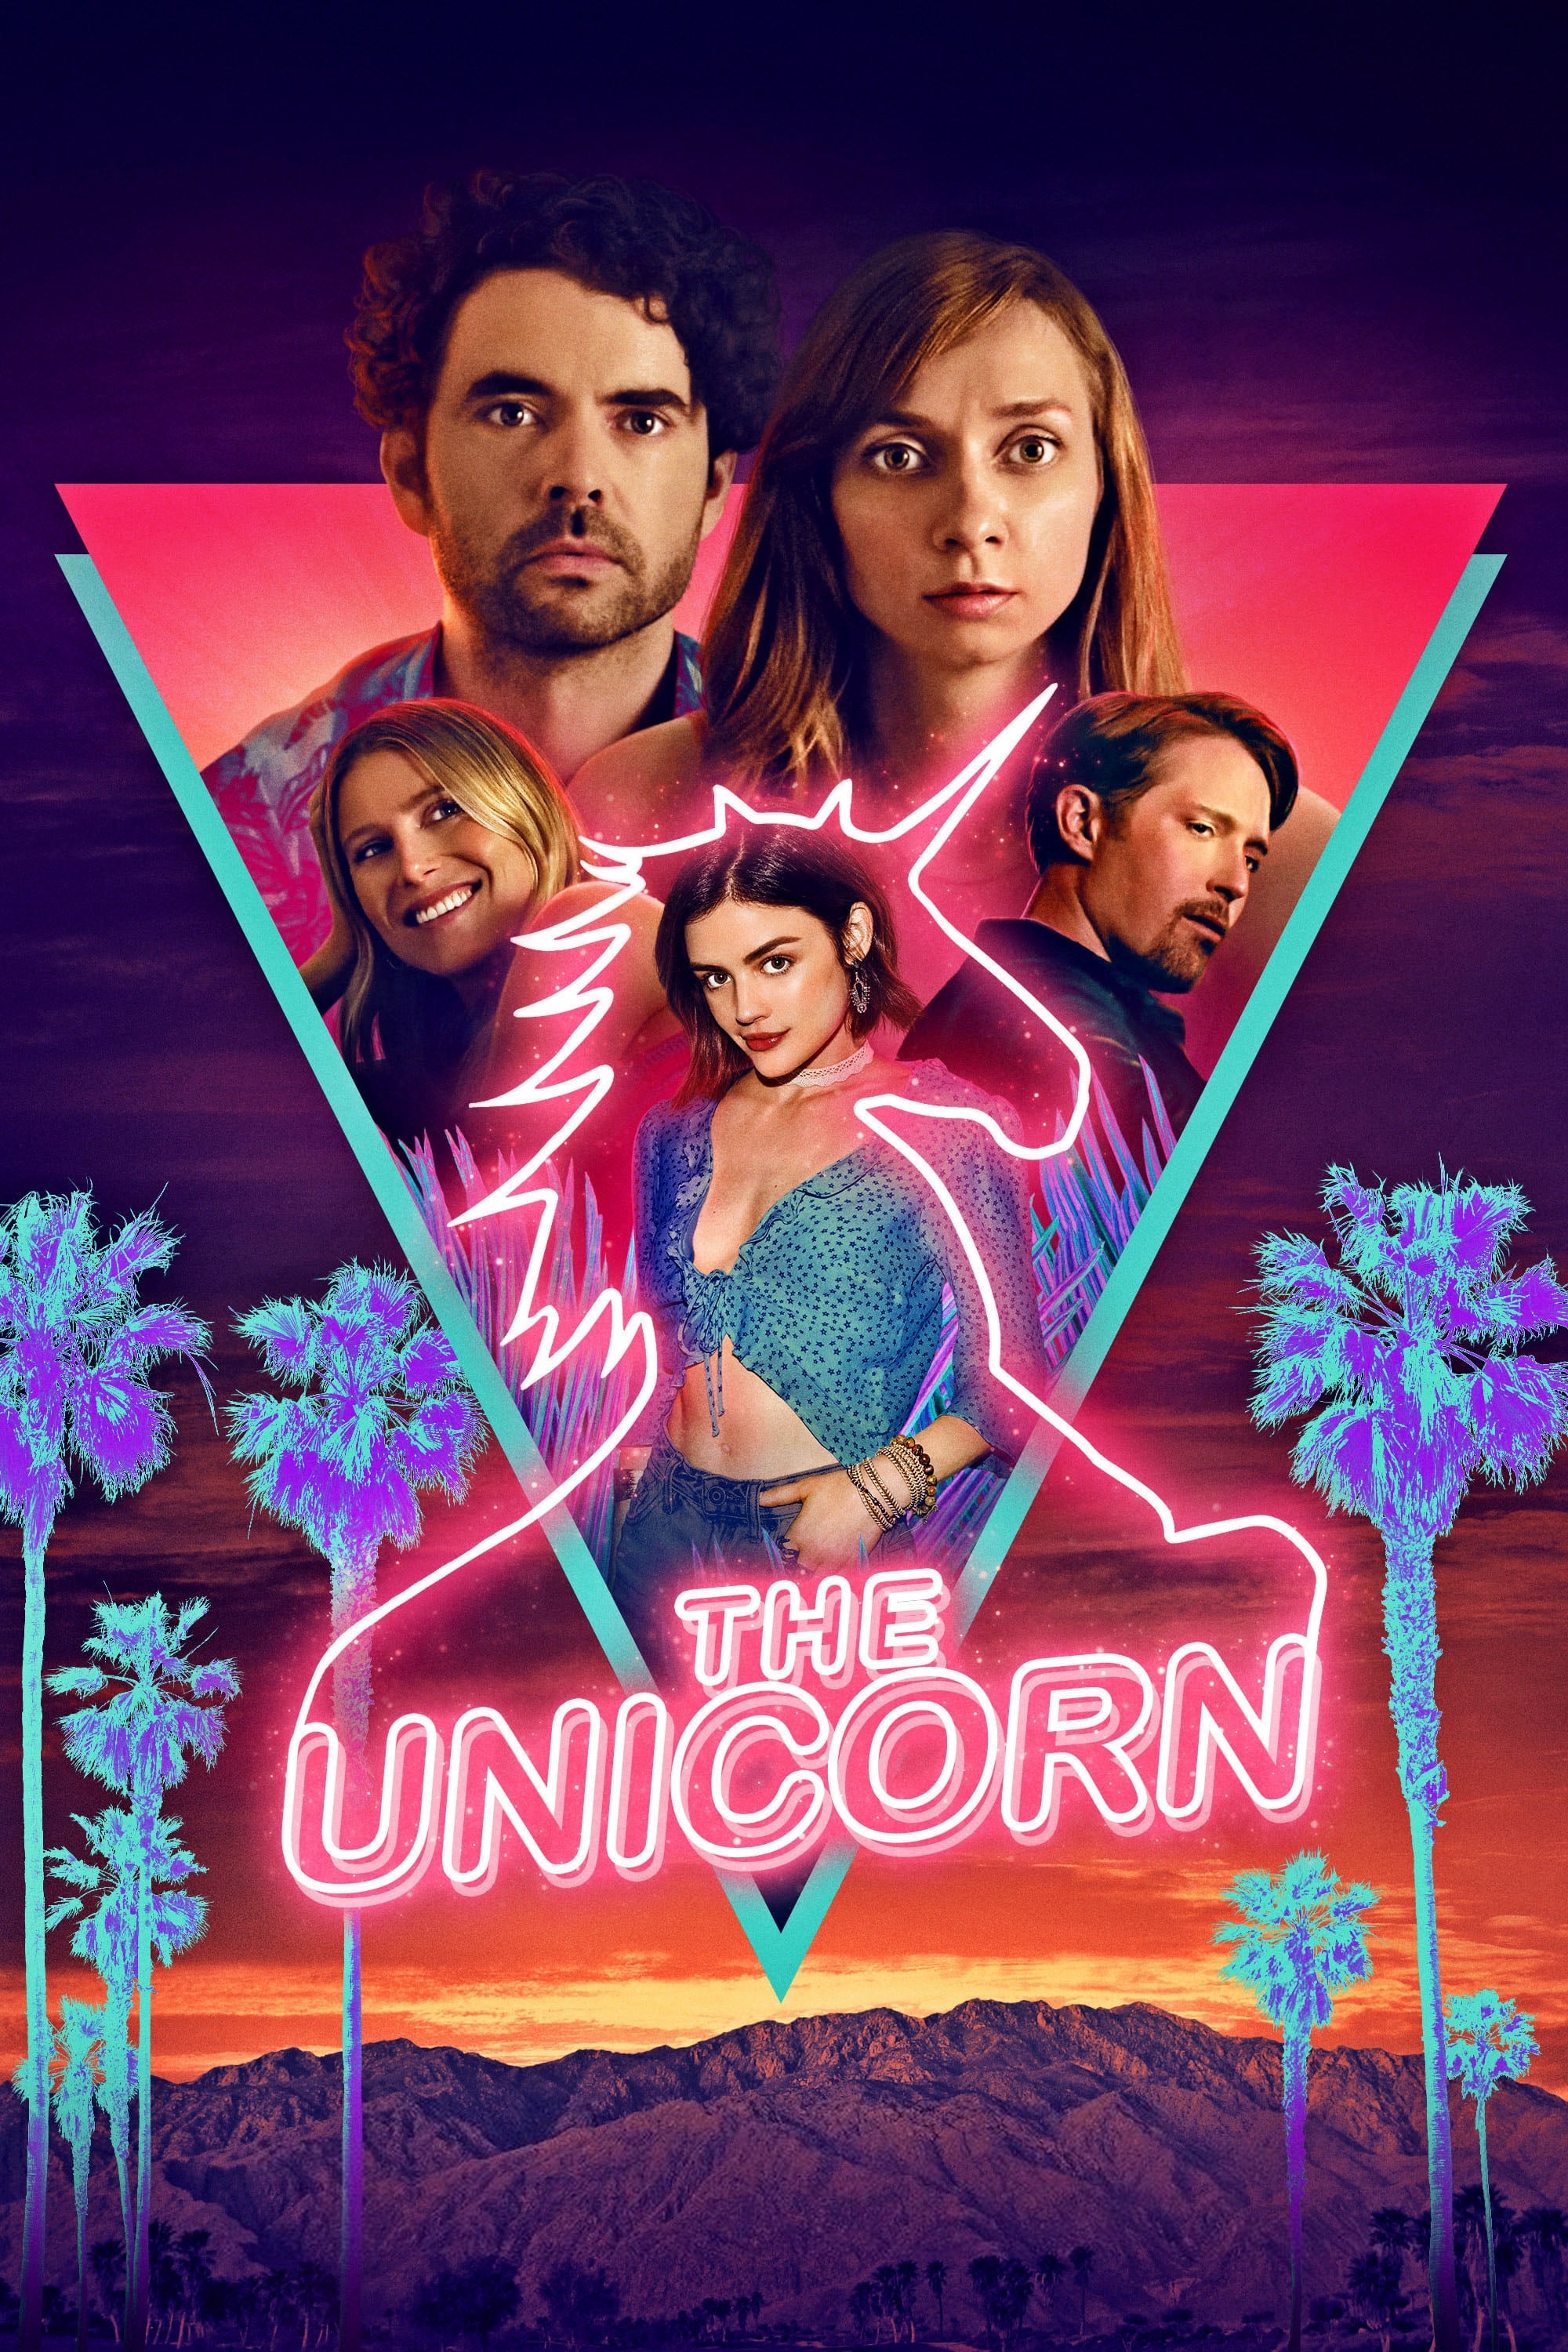 The Unicorn (2019)